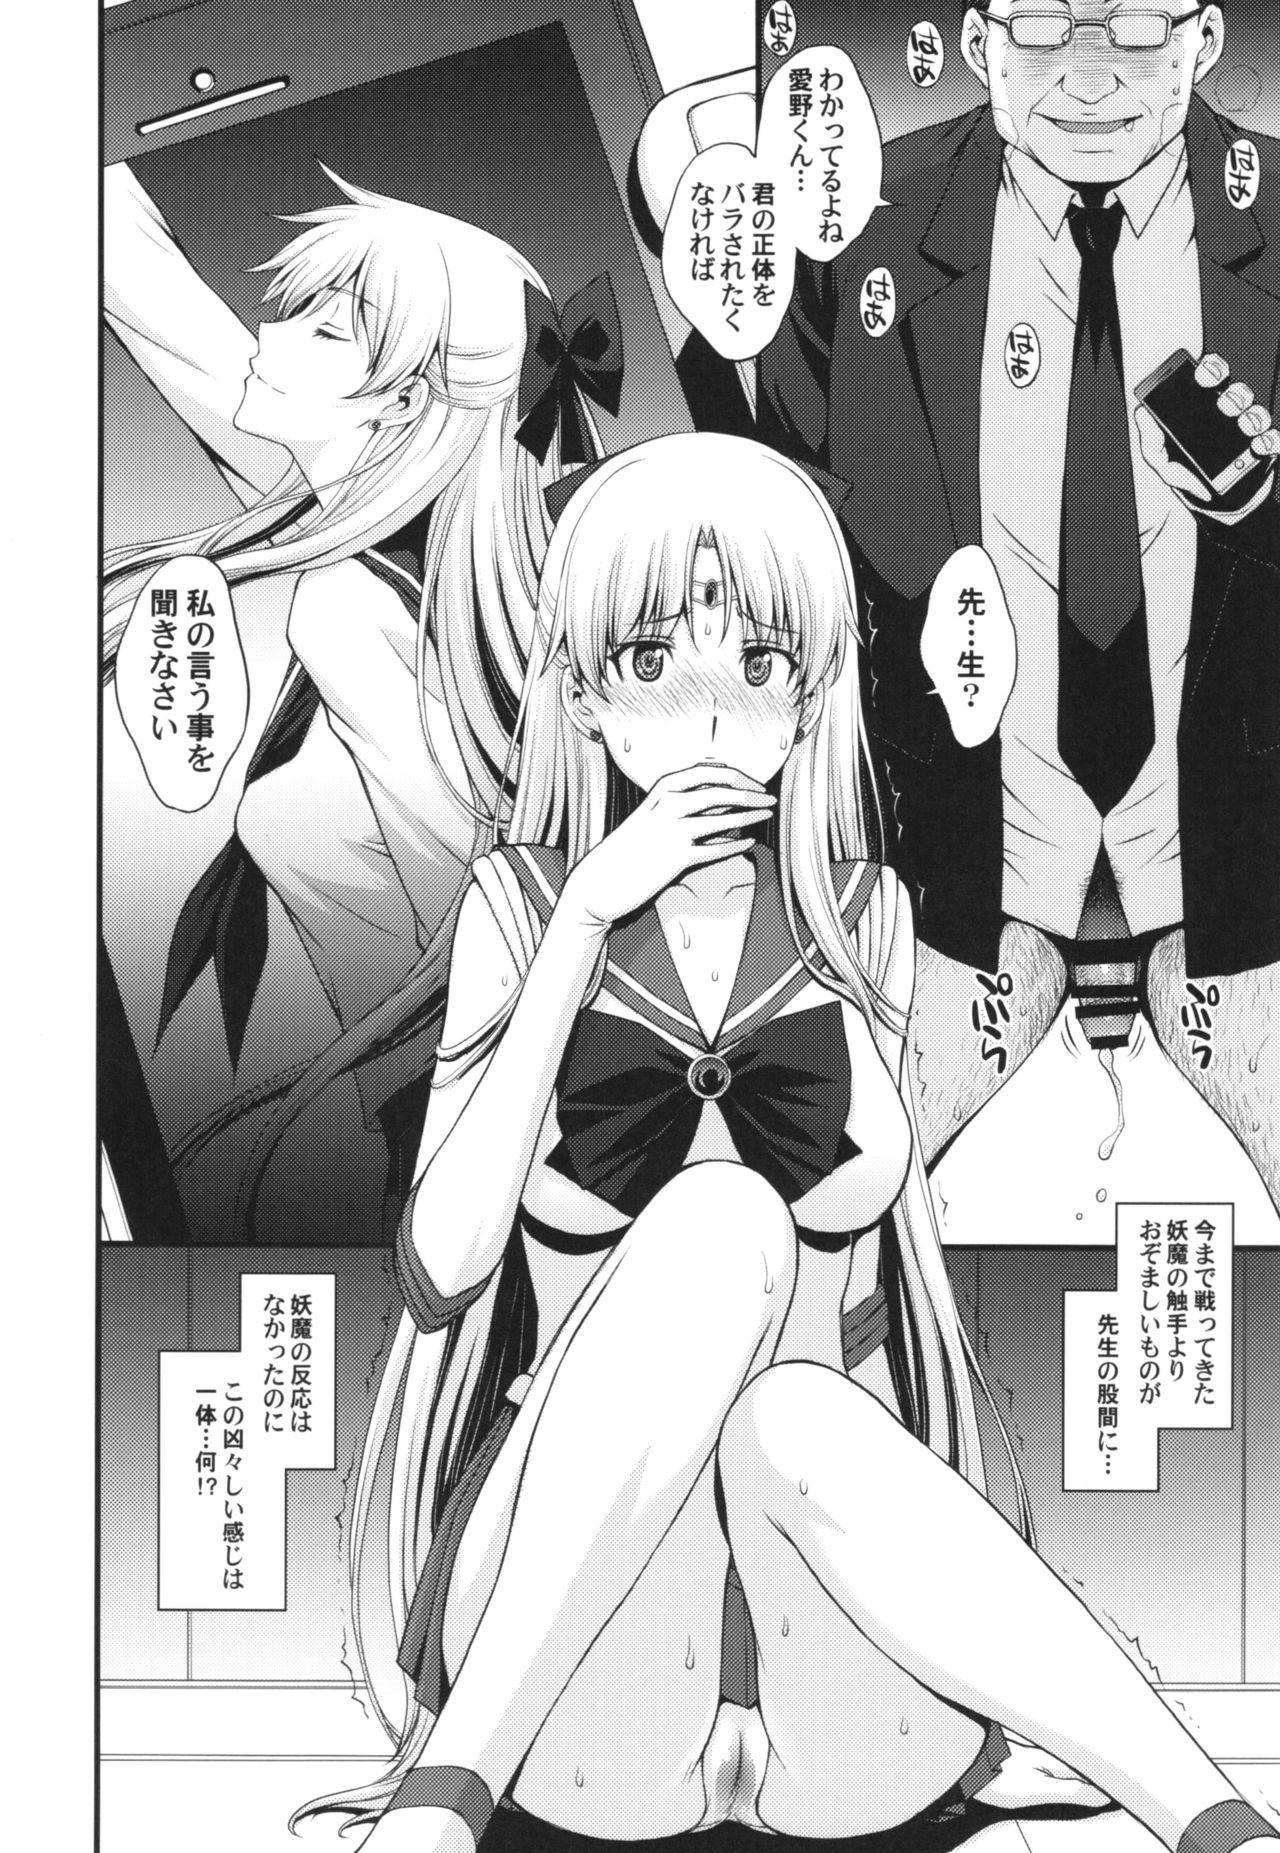 Sucking Venus VS Chuunen Dansei Kyouyu - Sailor moon 8teen - Page 4